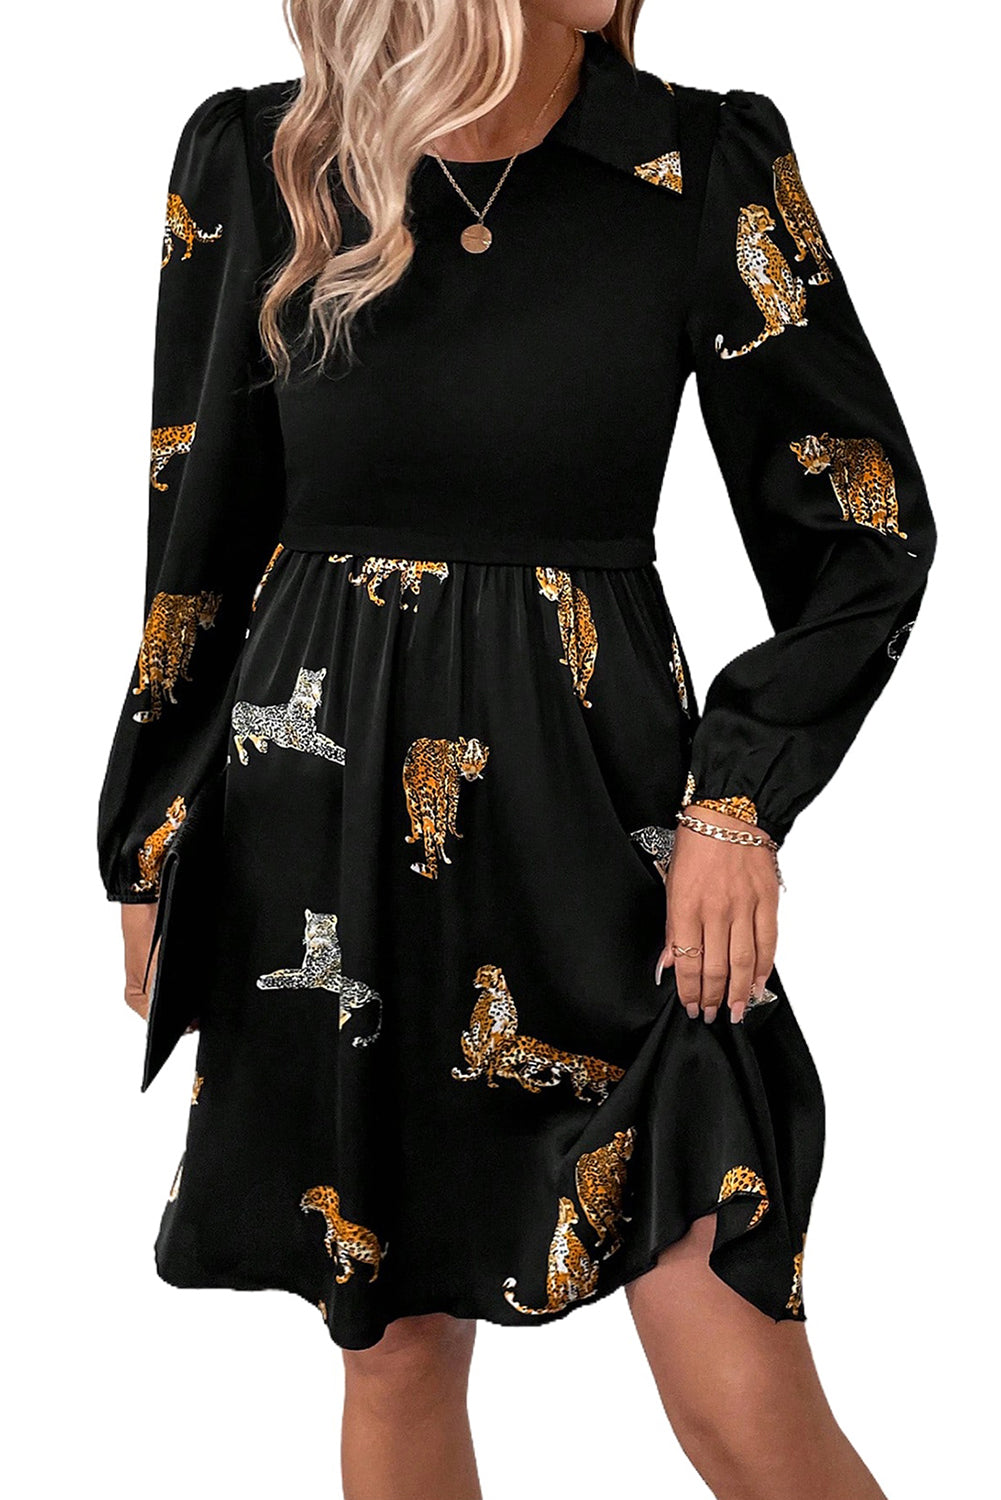 Crna okretna haljina dugih rukava s uzorkom leoparda